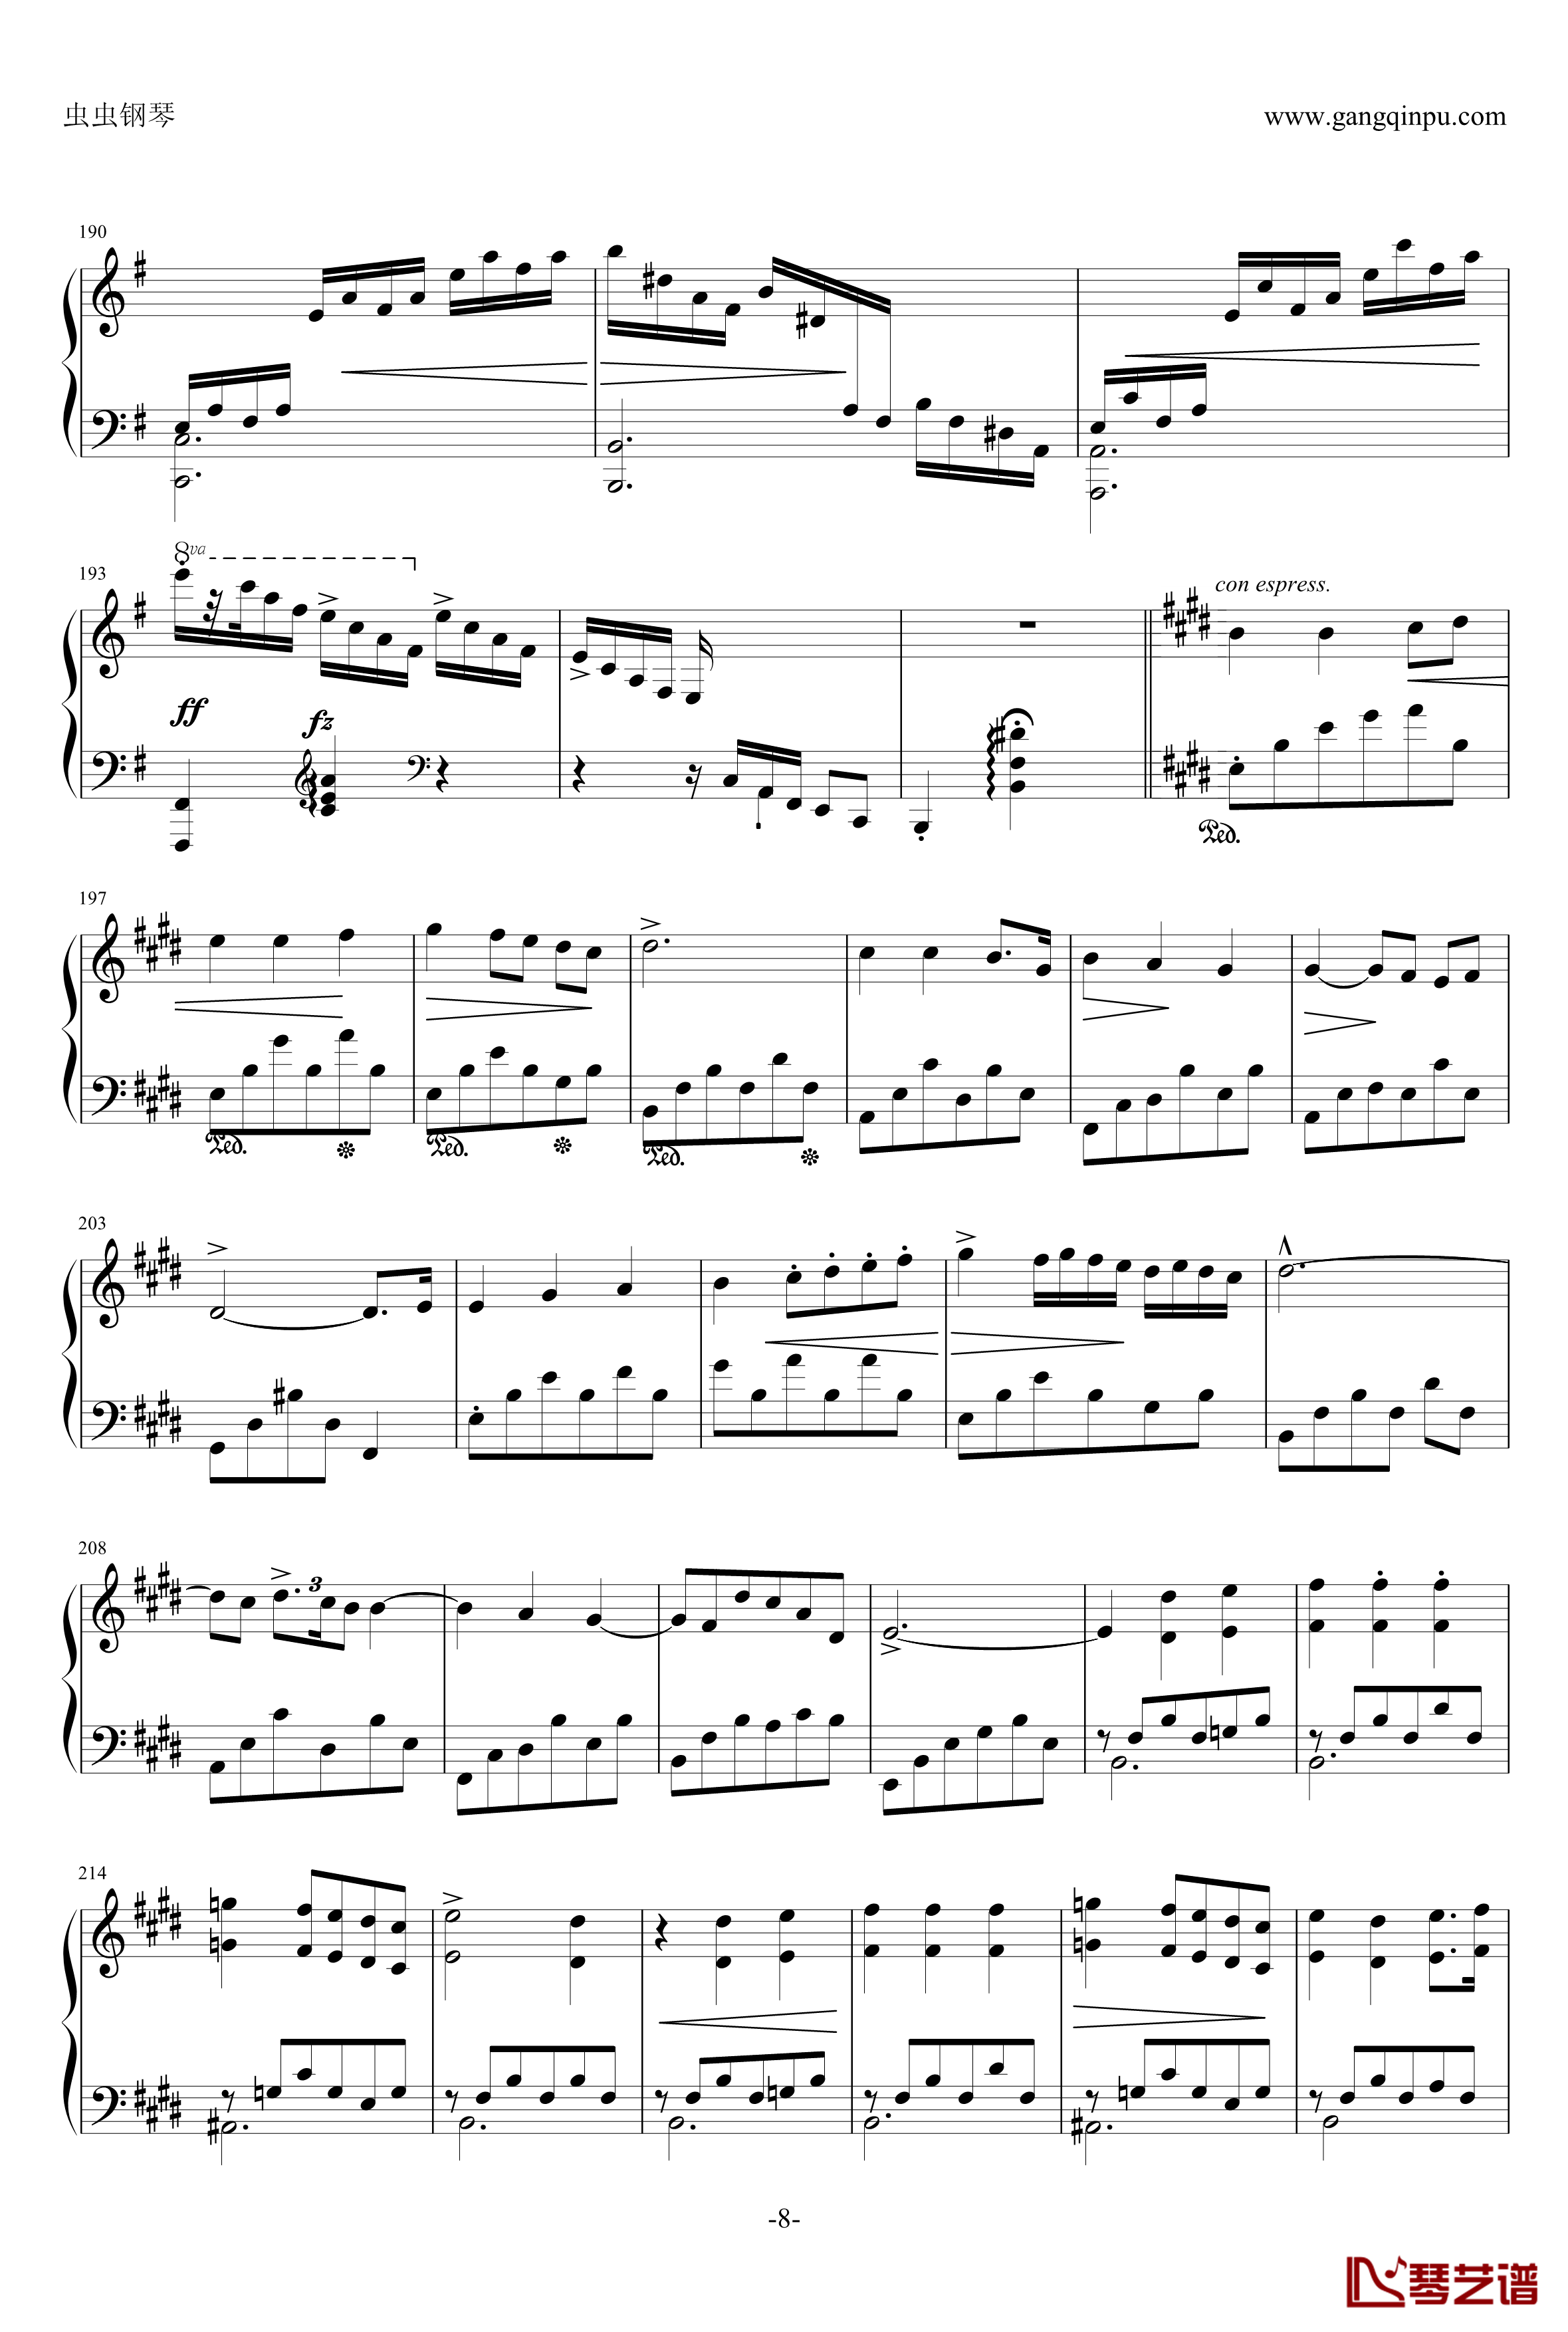 e小调钢琴协奏曲钢琴谱-乐之琴简易钢琴版-肖邦-chopin8